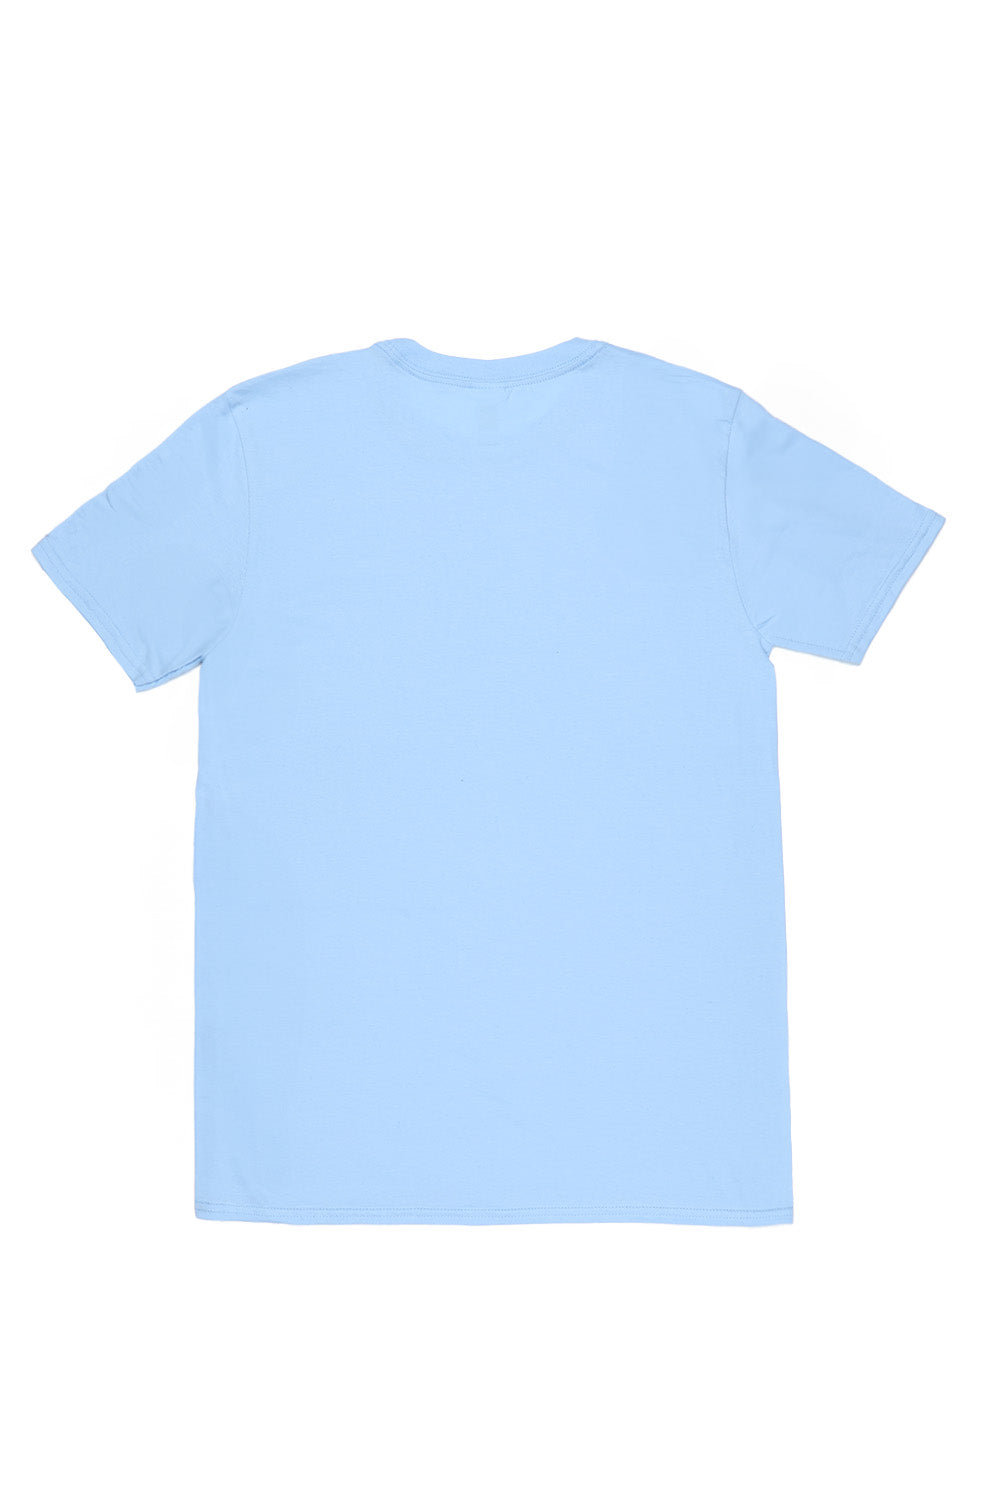 Santa Monica T-Shirt in Light Blue (Custom Packs)